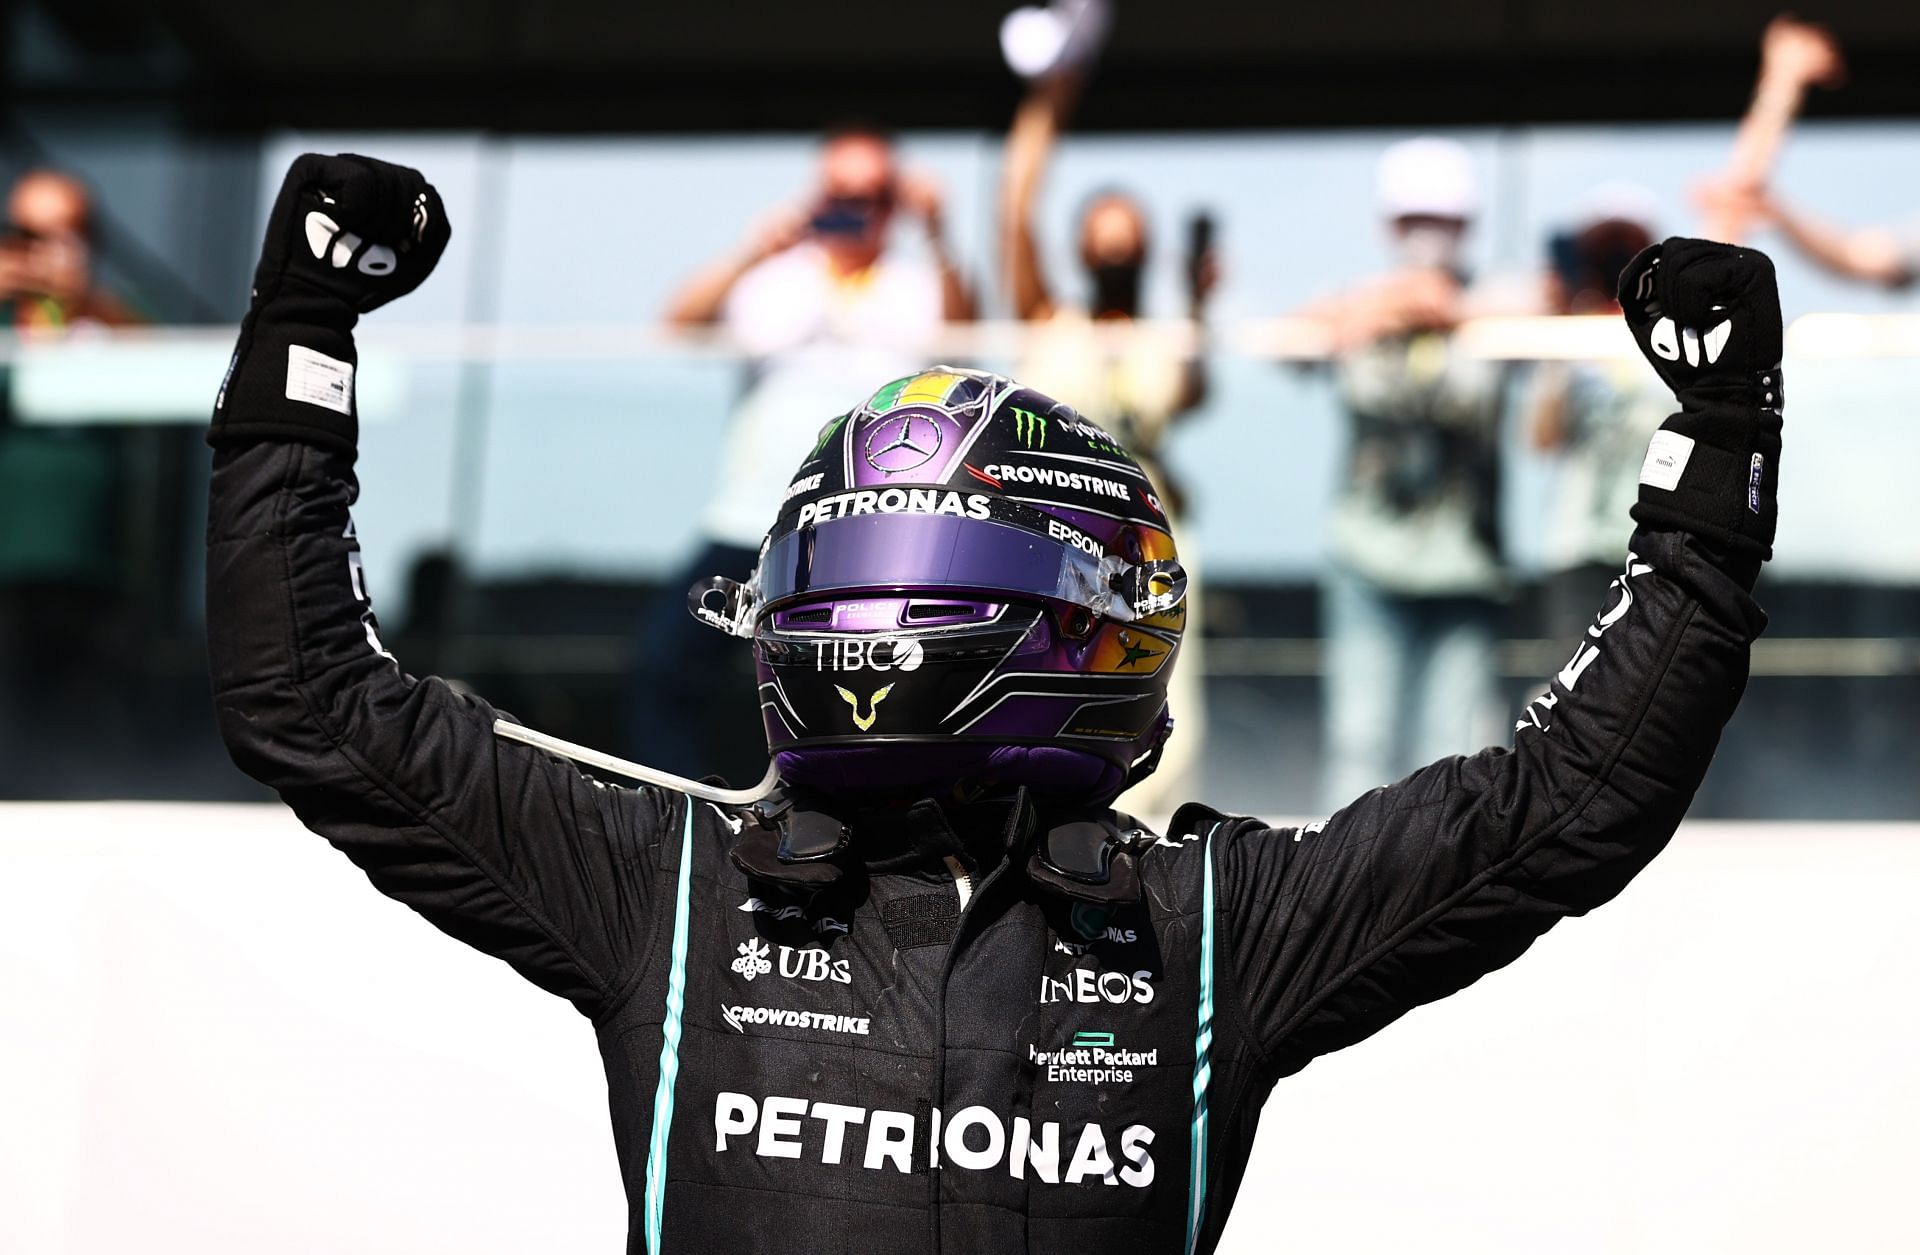 Lewis Hamilton celebrates his win at Interlagos in 2021.